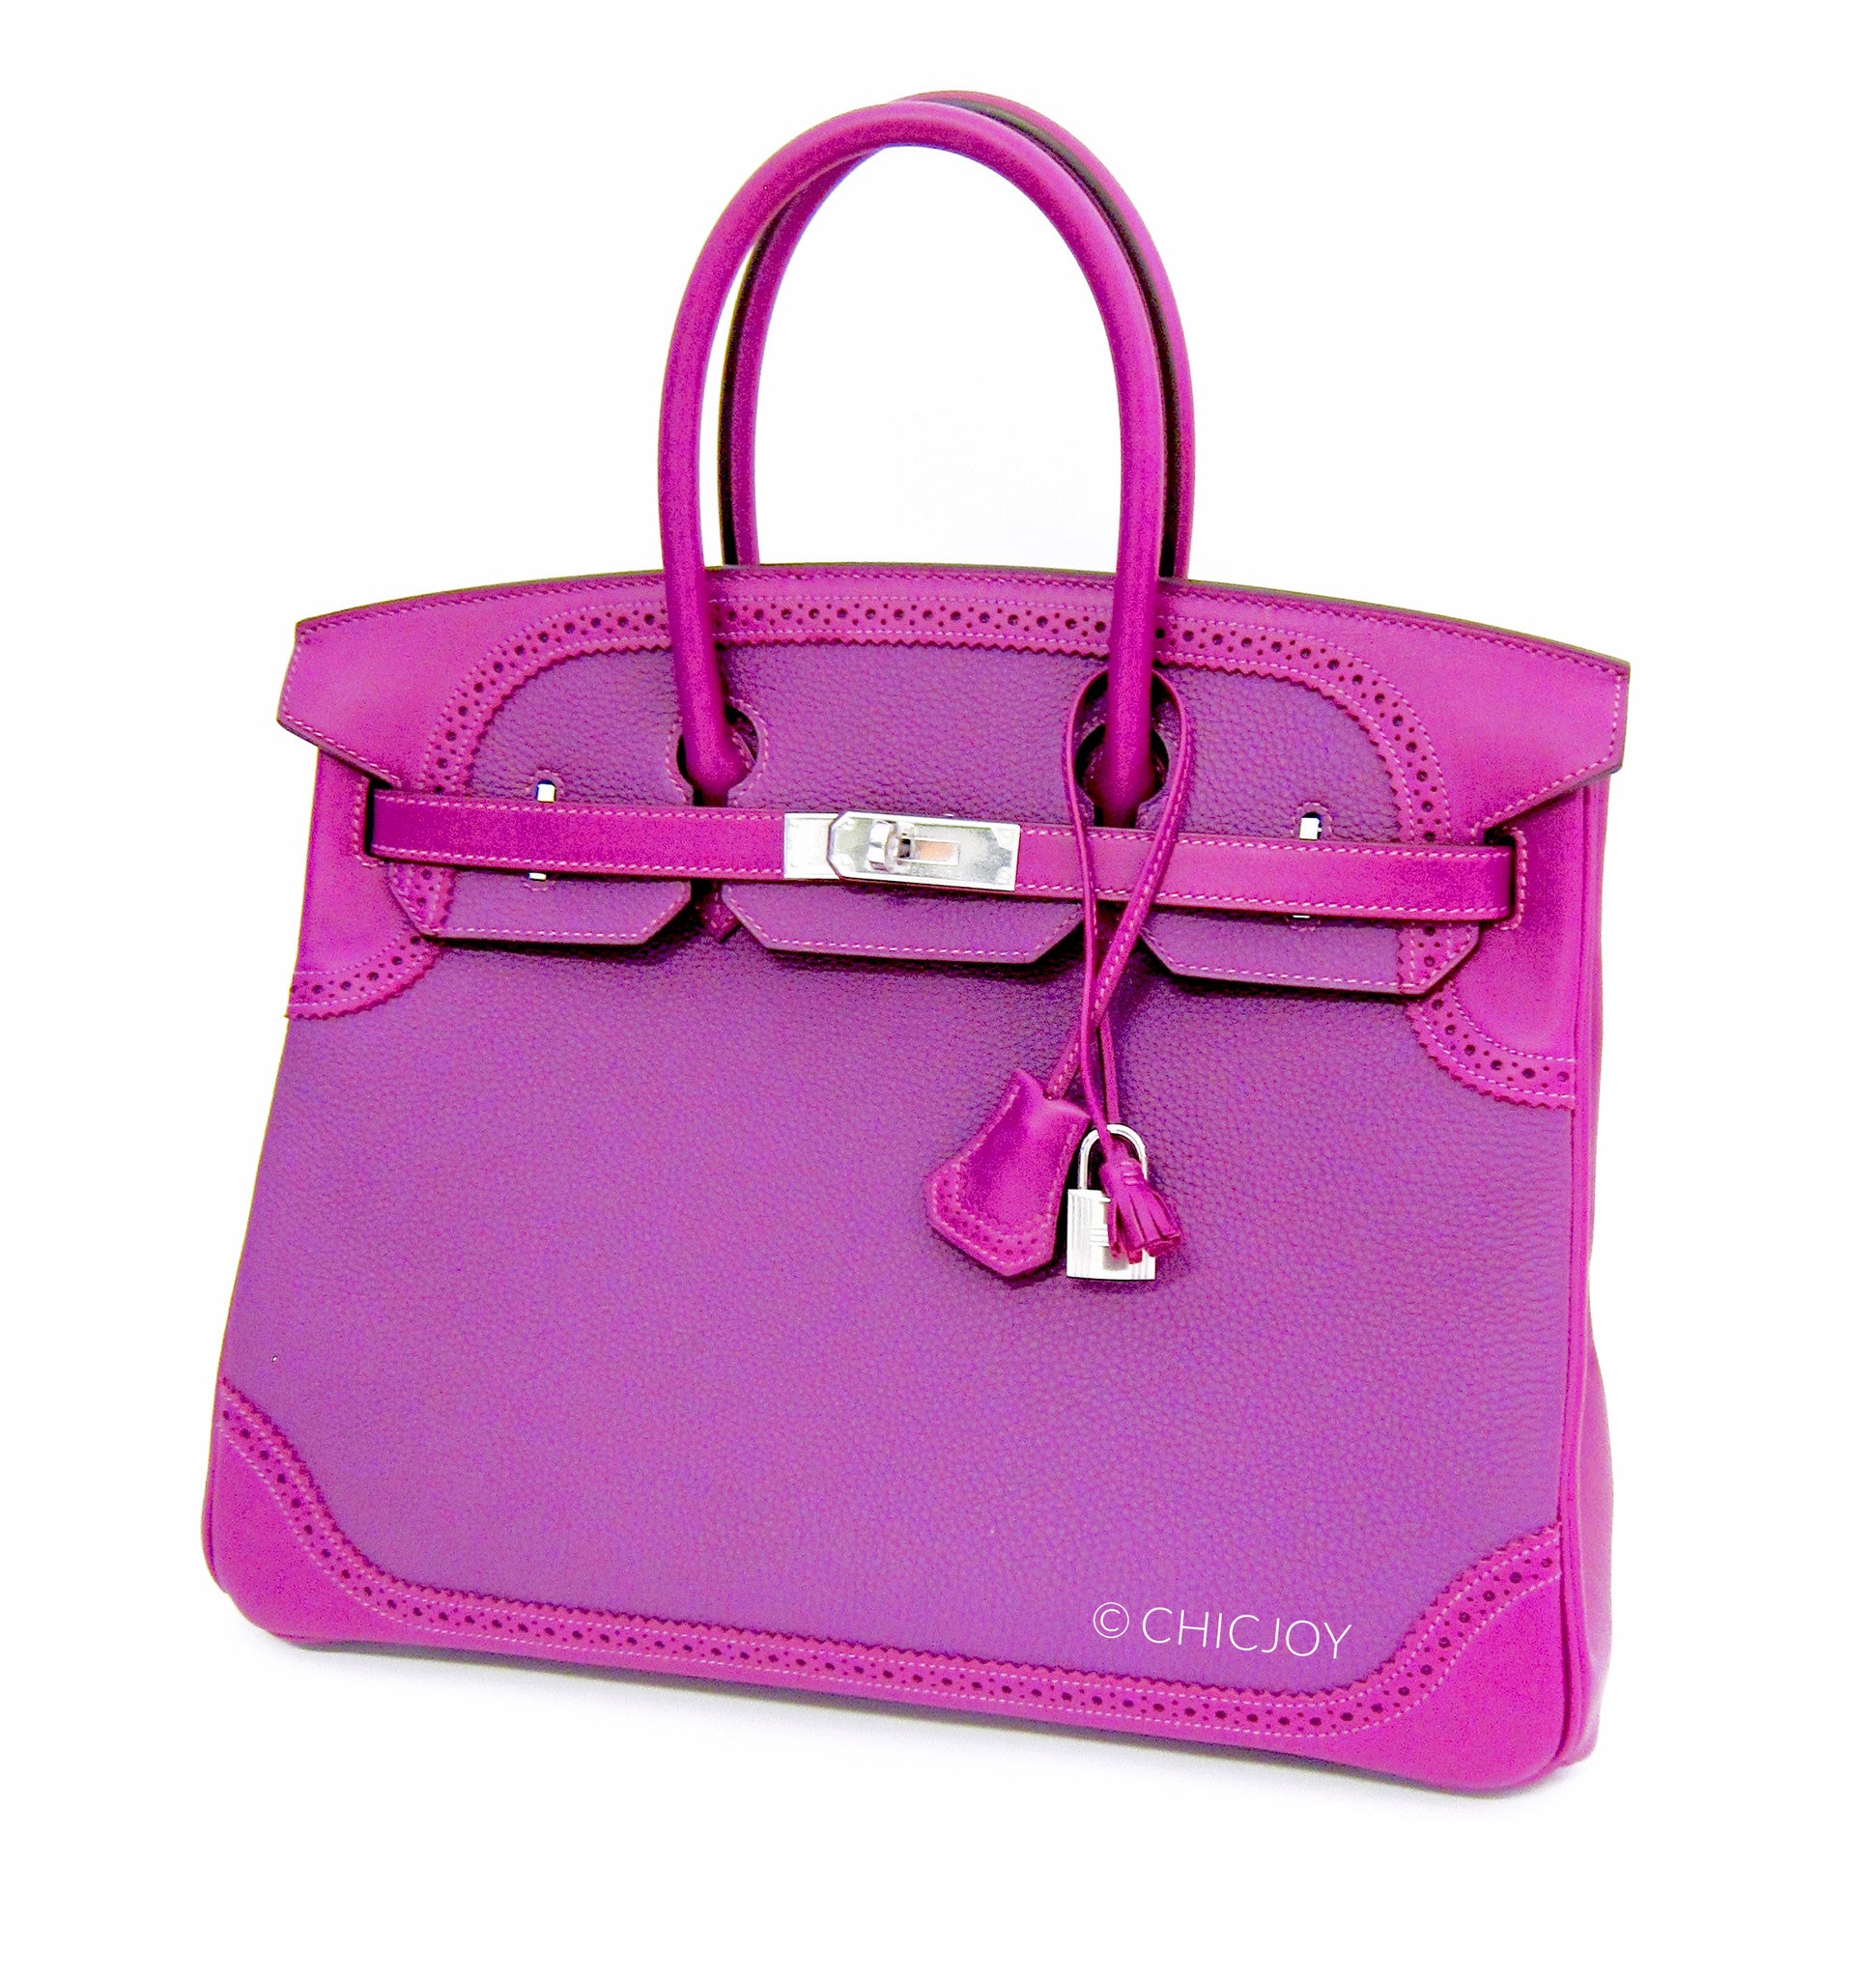 Birkin 35 Ultra Violet Togo Bag